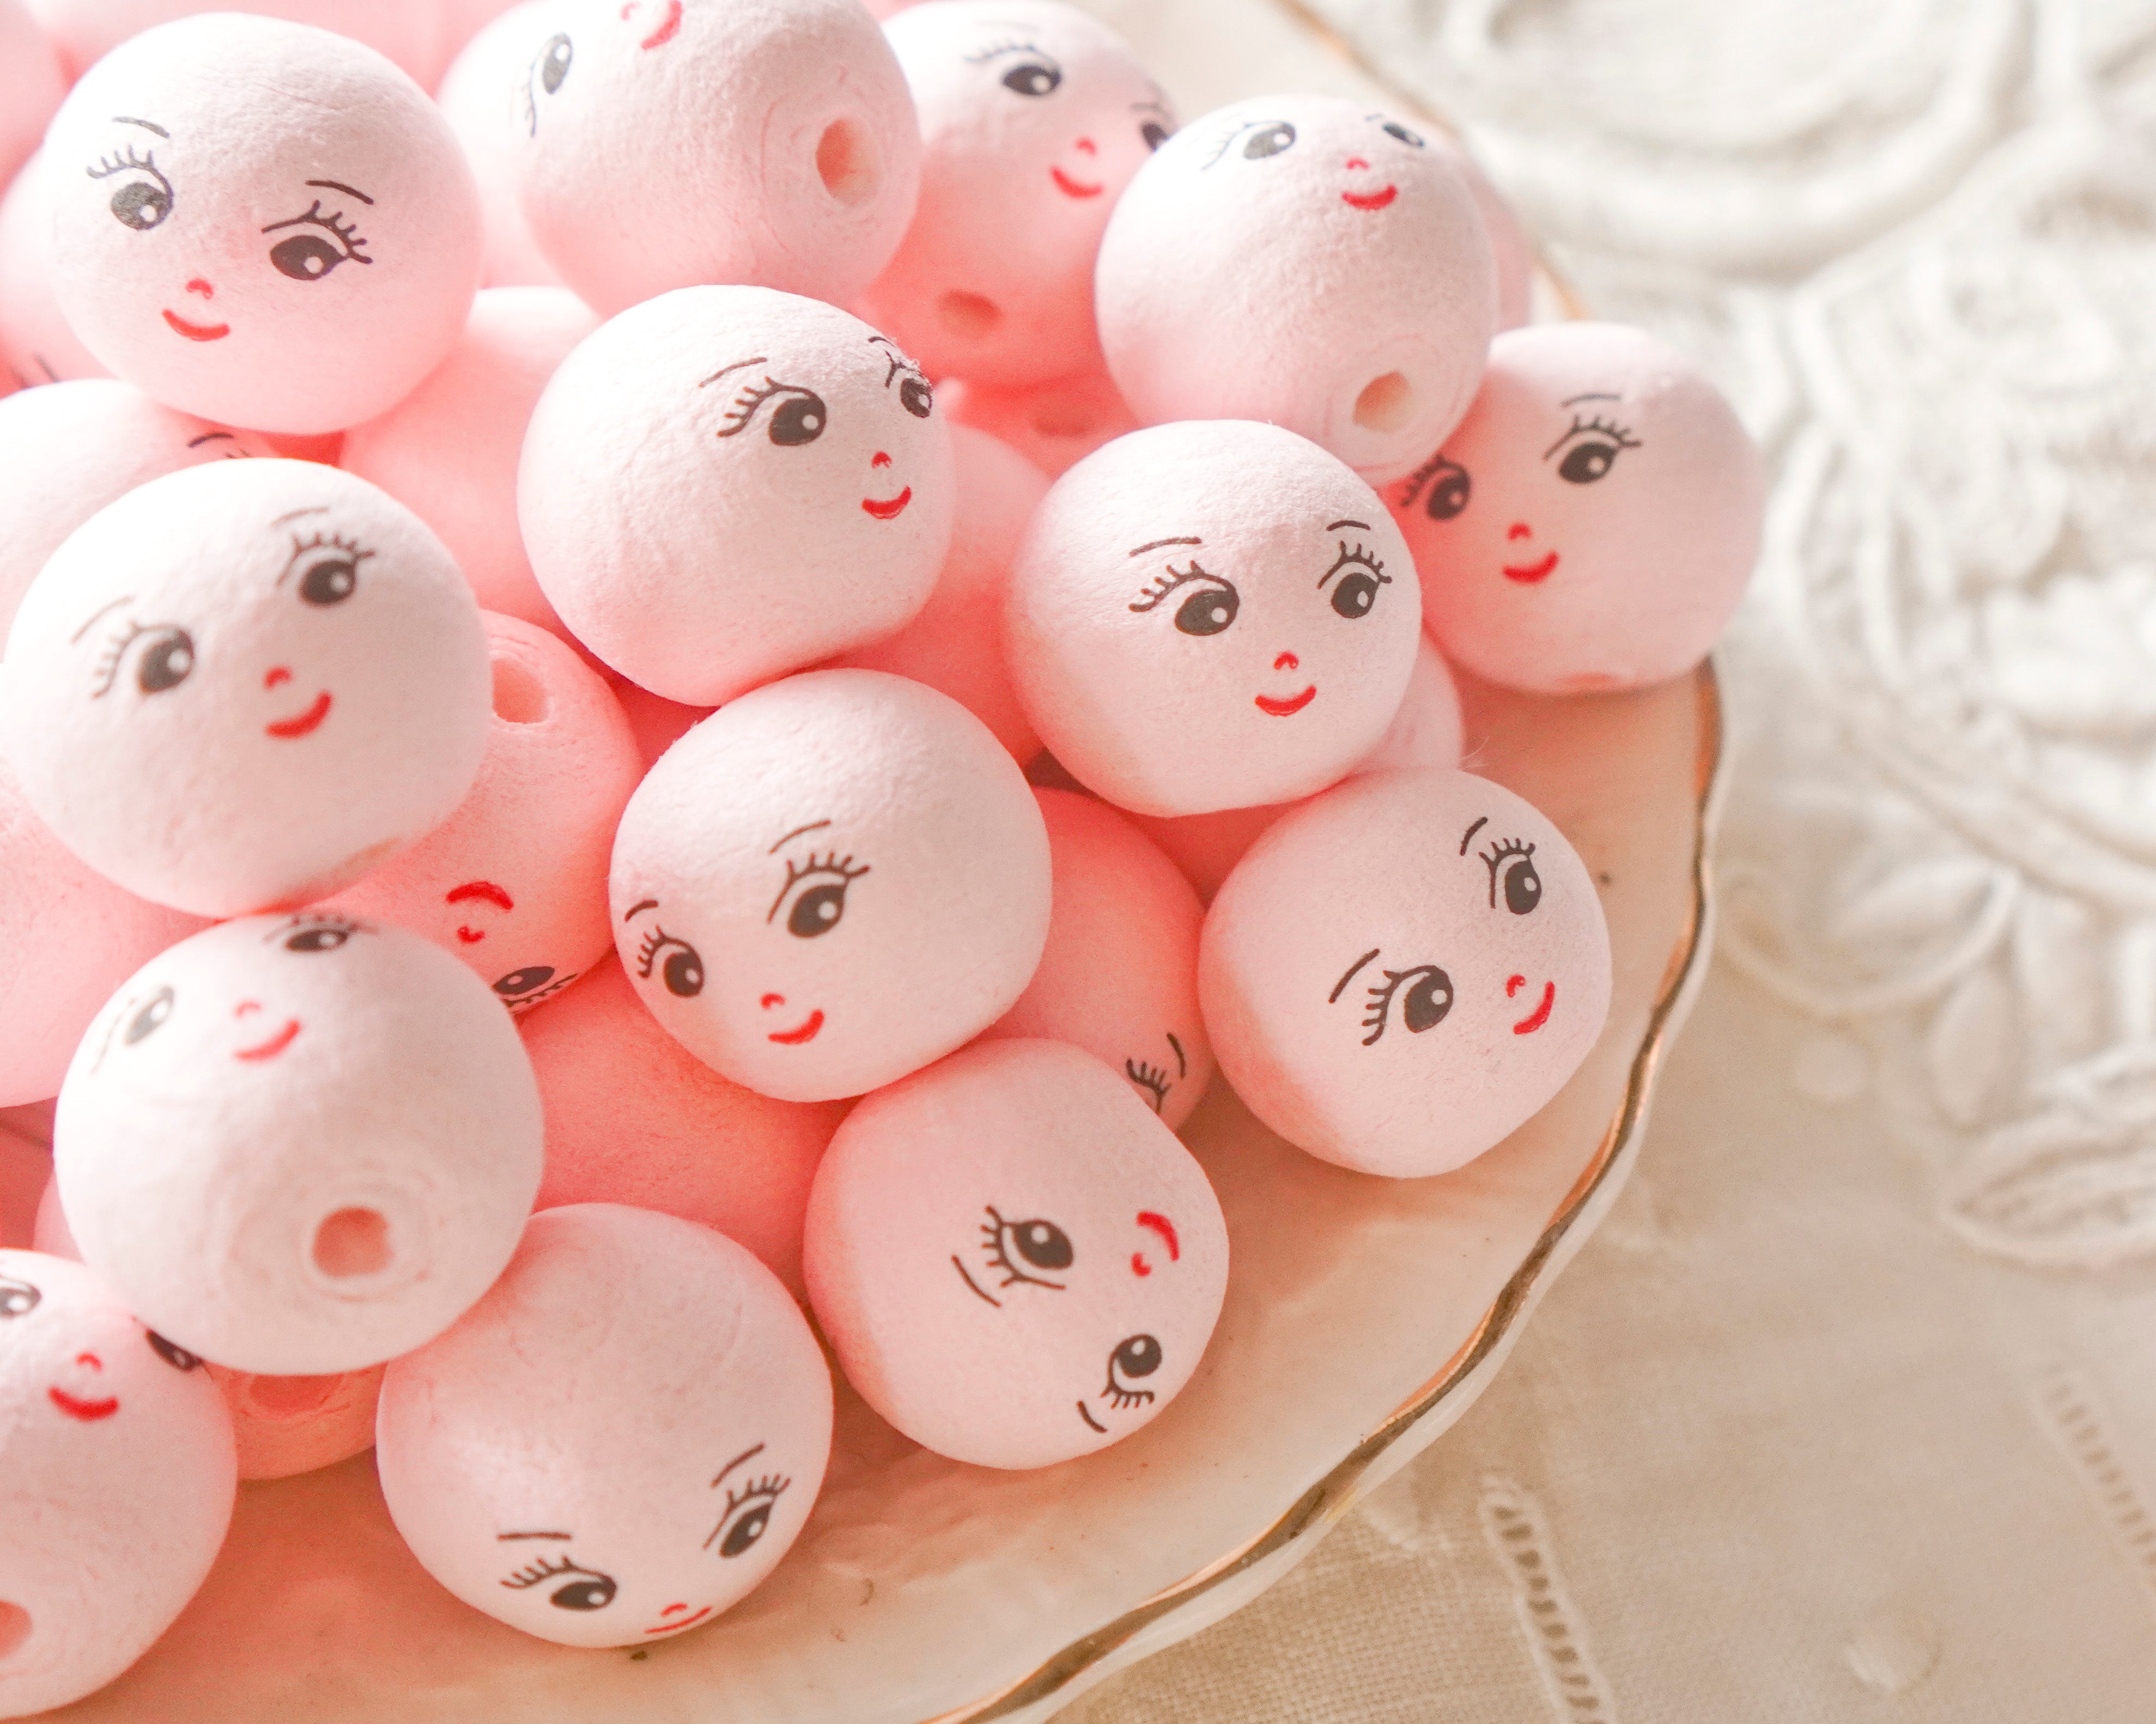 Mini Spun Cotton Heads: CHARM - 18mm Pink Vintage-Style Cotton Doll Heads, 12 Pcs.